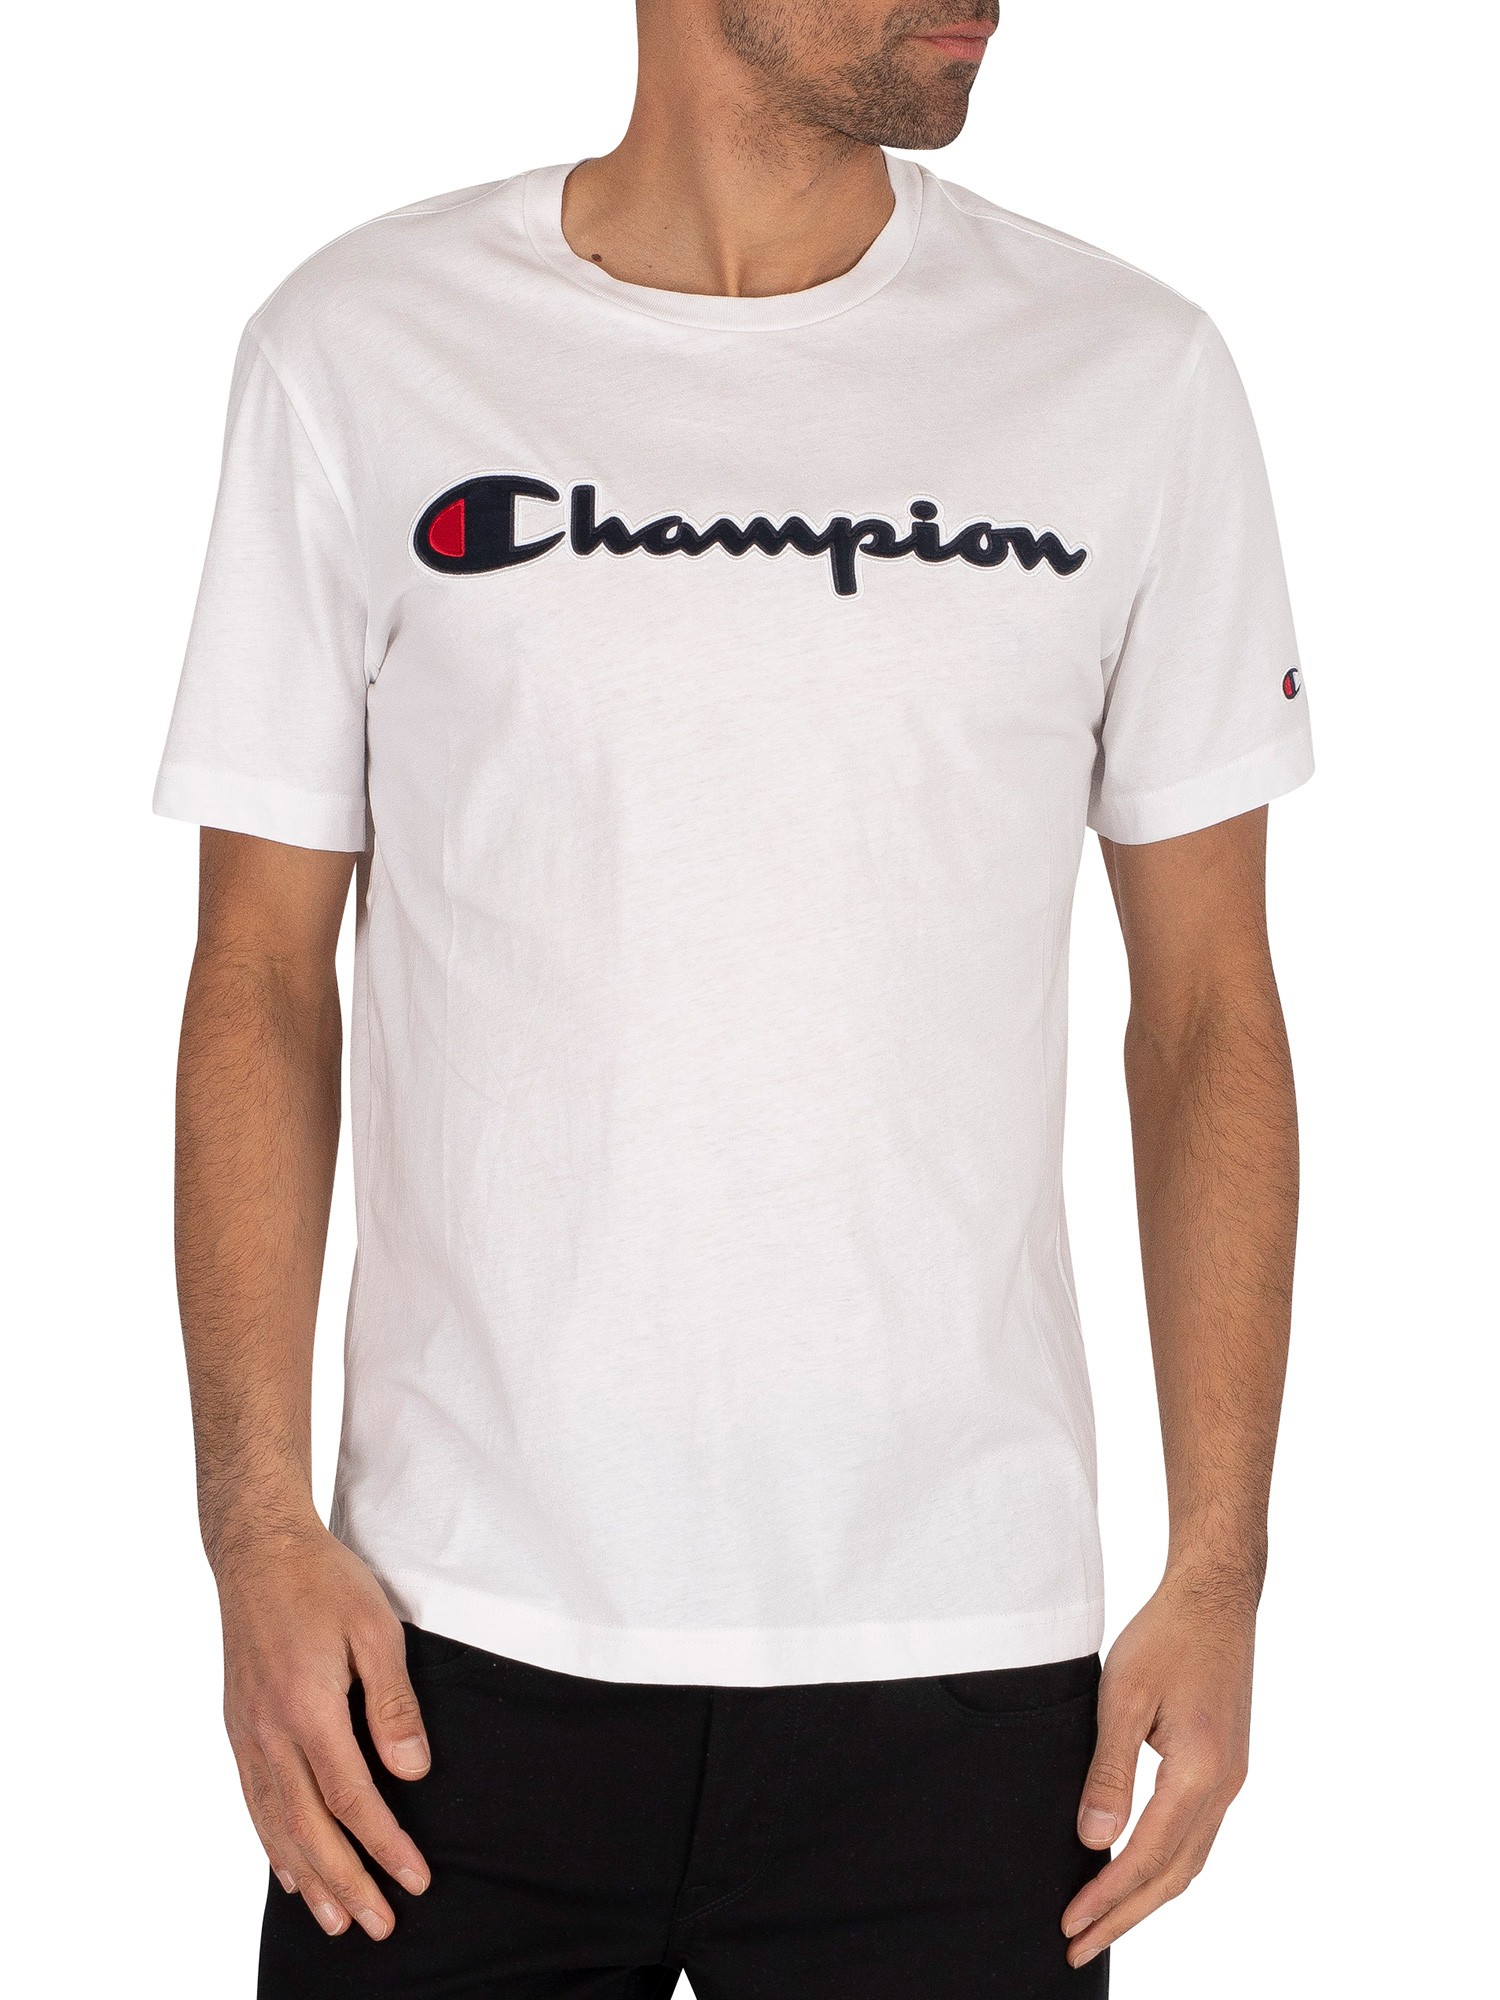 mens white champion t shirt